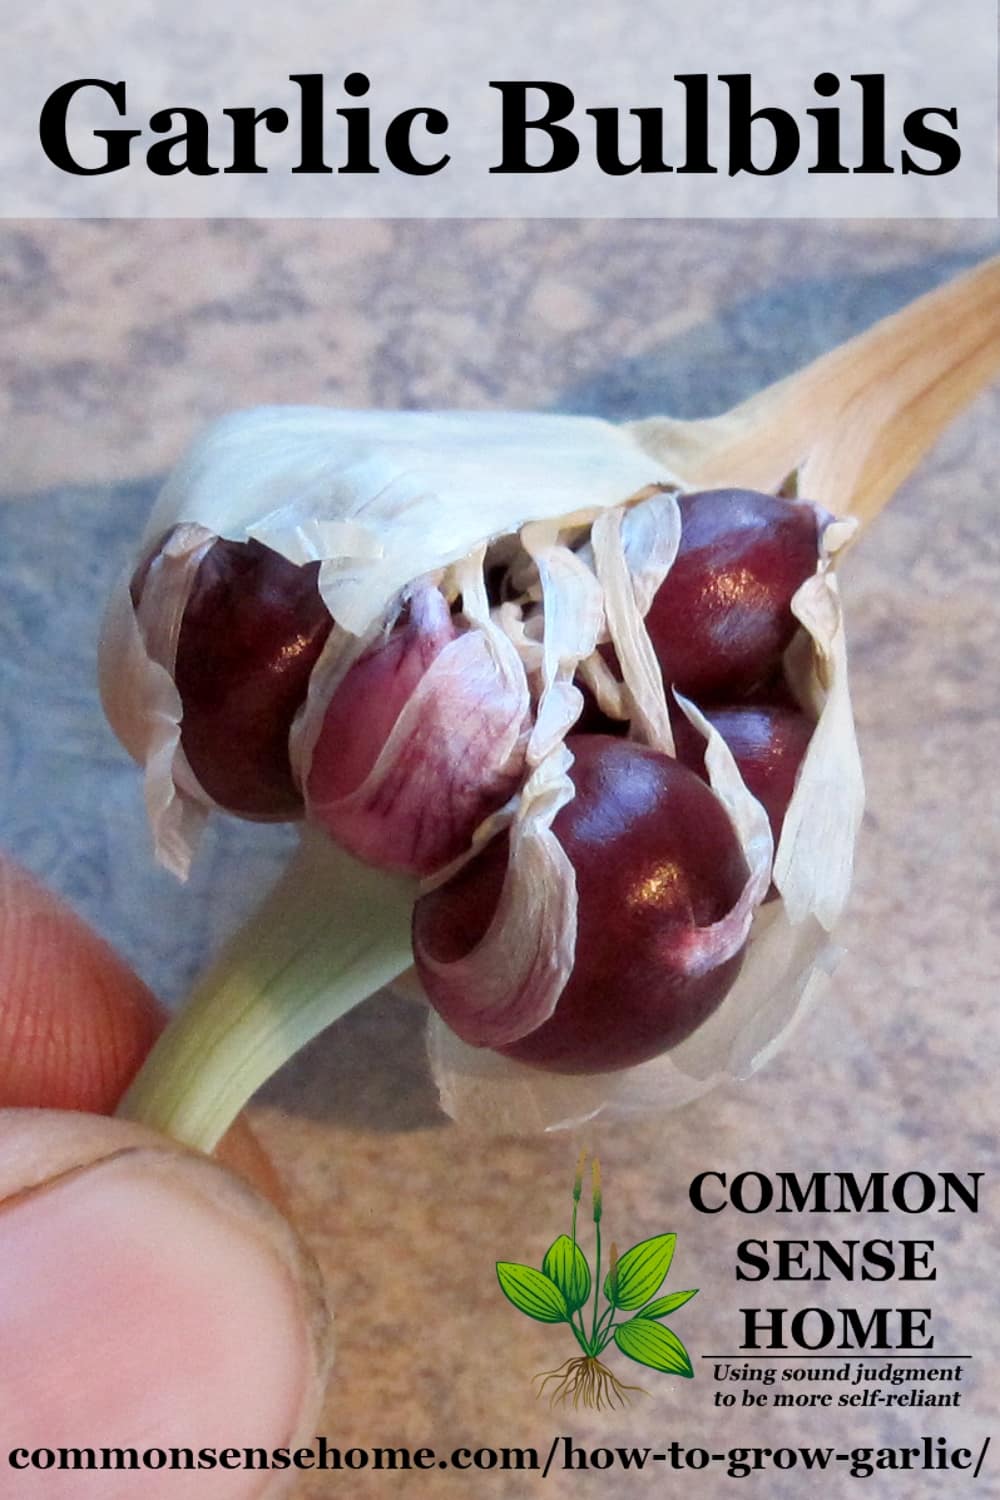 Garlic bulbils